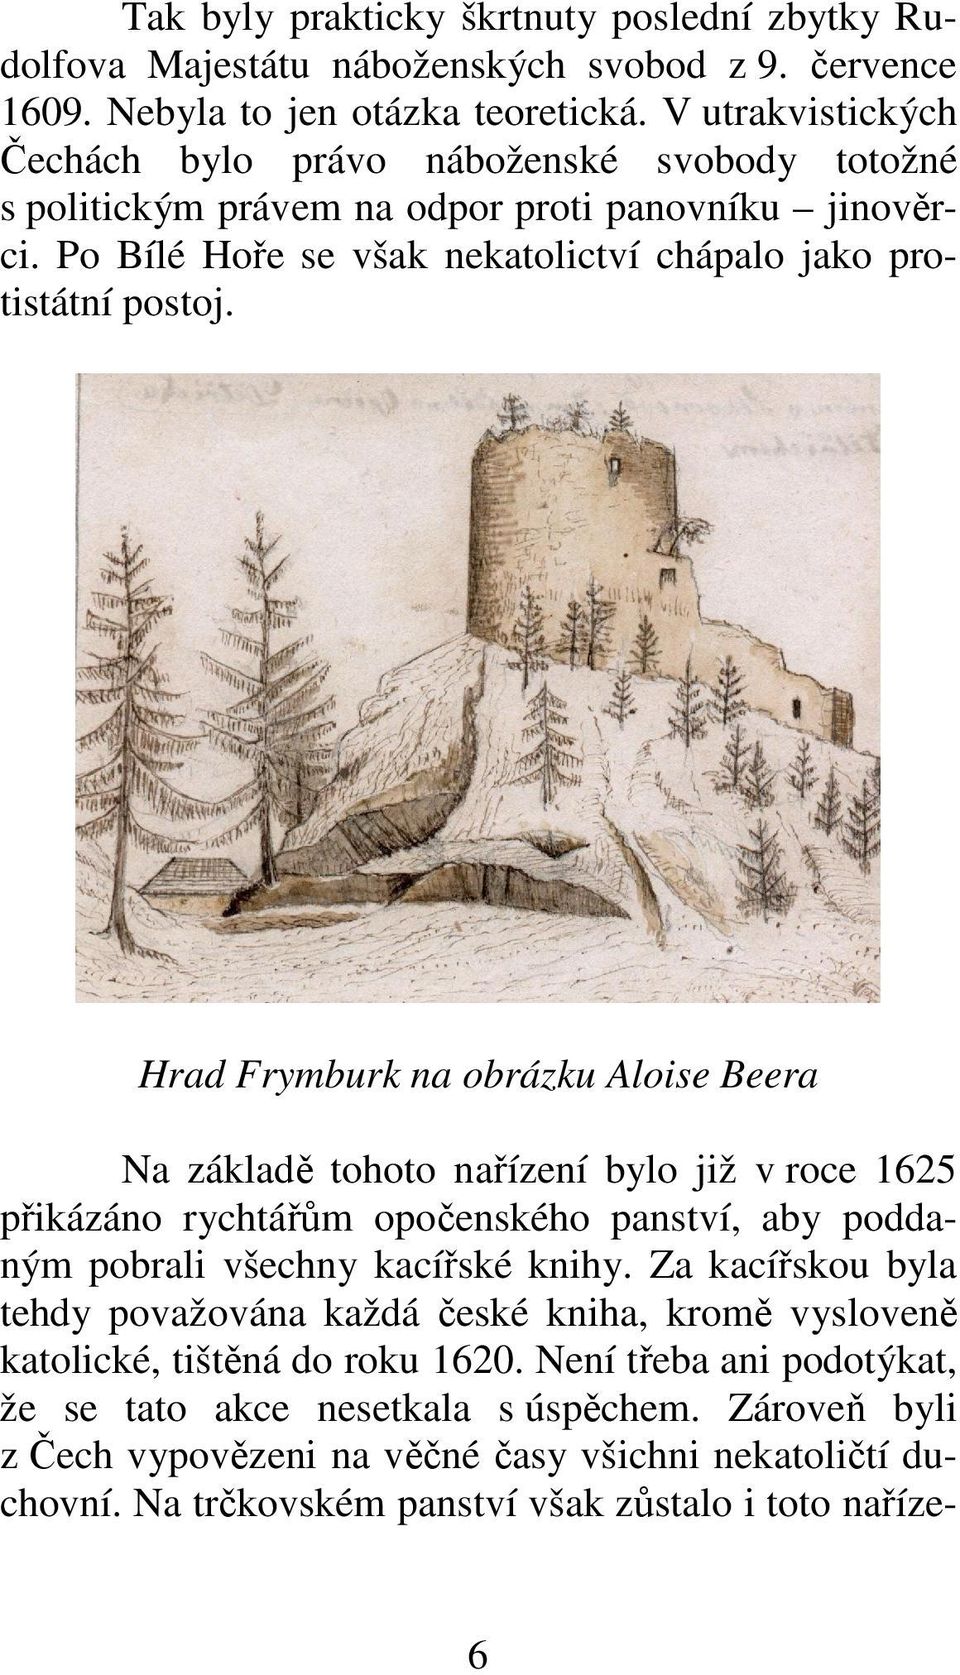 Hrad Frymburk na obrázku Aloise Beera Na základě tohoto nařízení bylo již v roce 1625 přikázáno rychtářům opočenského panství, aby poddaným pobrali všechny kacířské knihy.